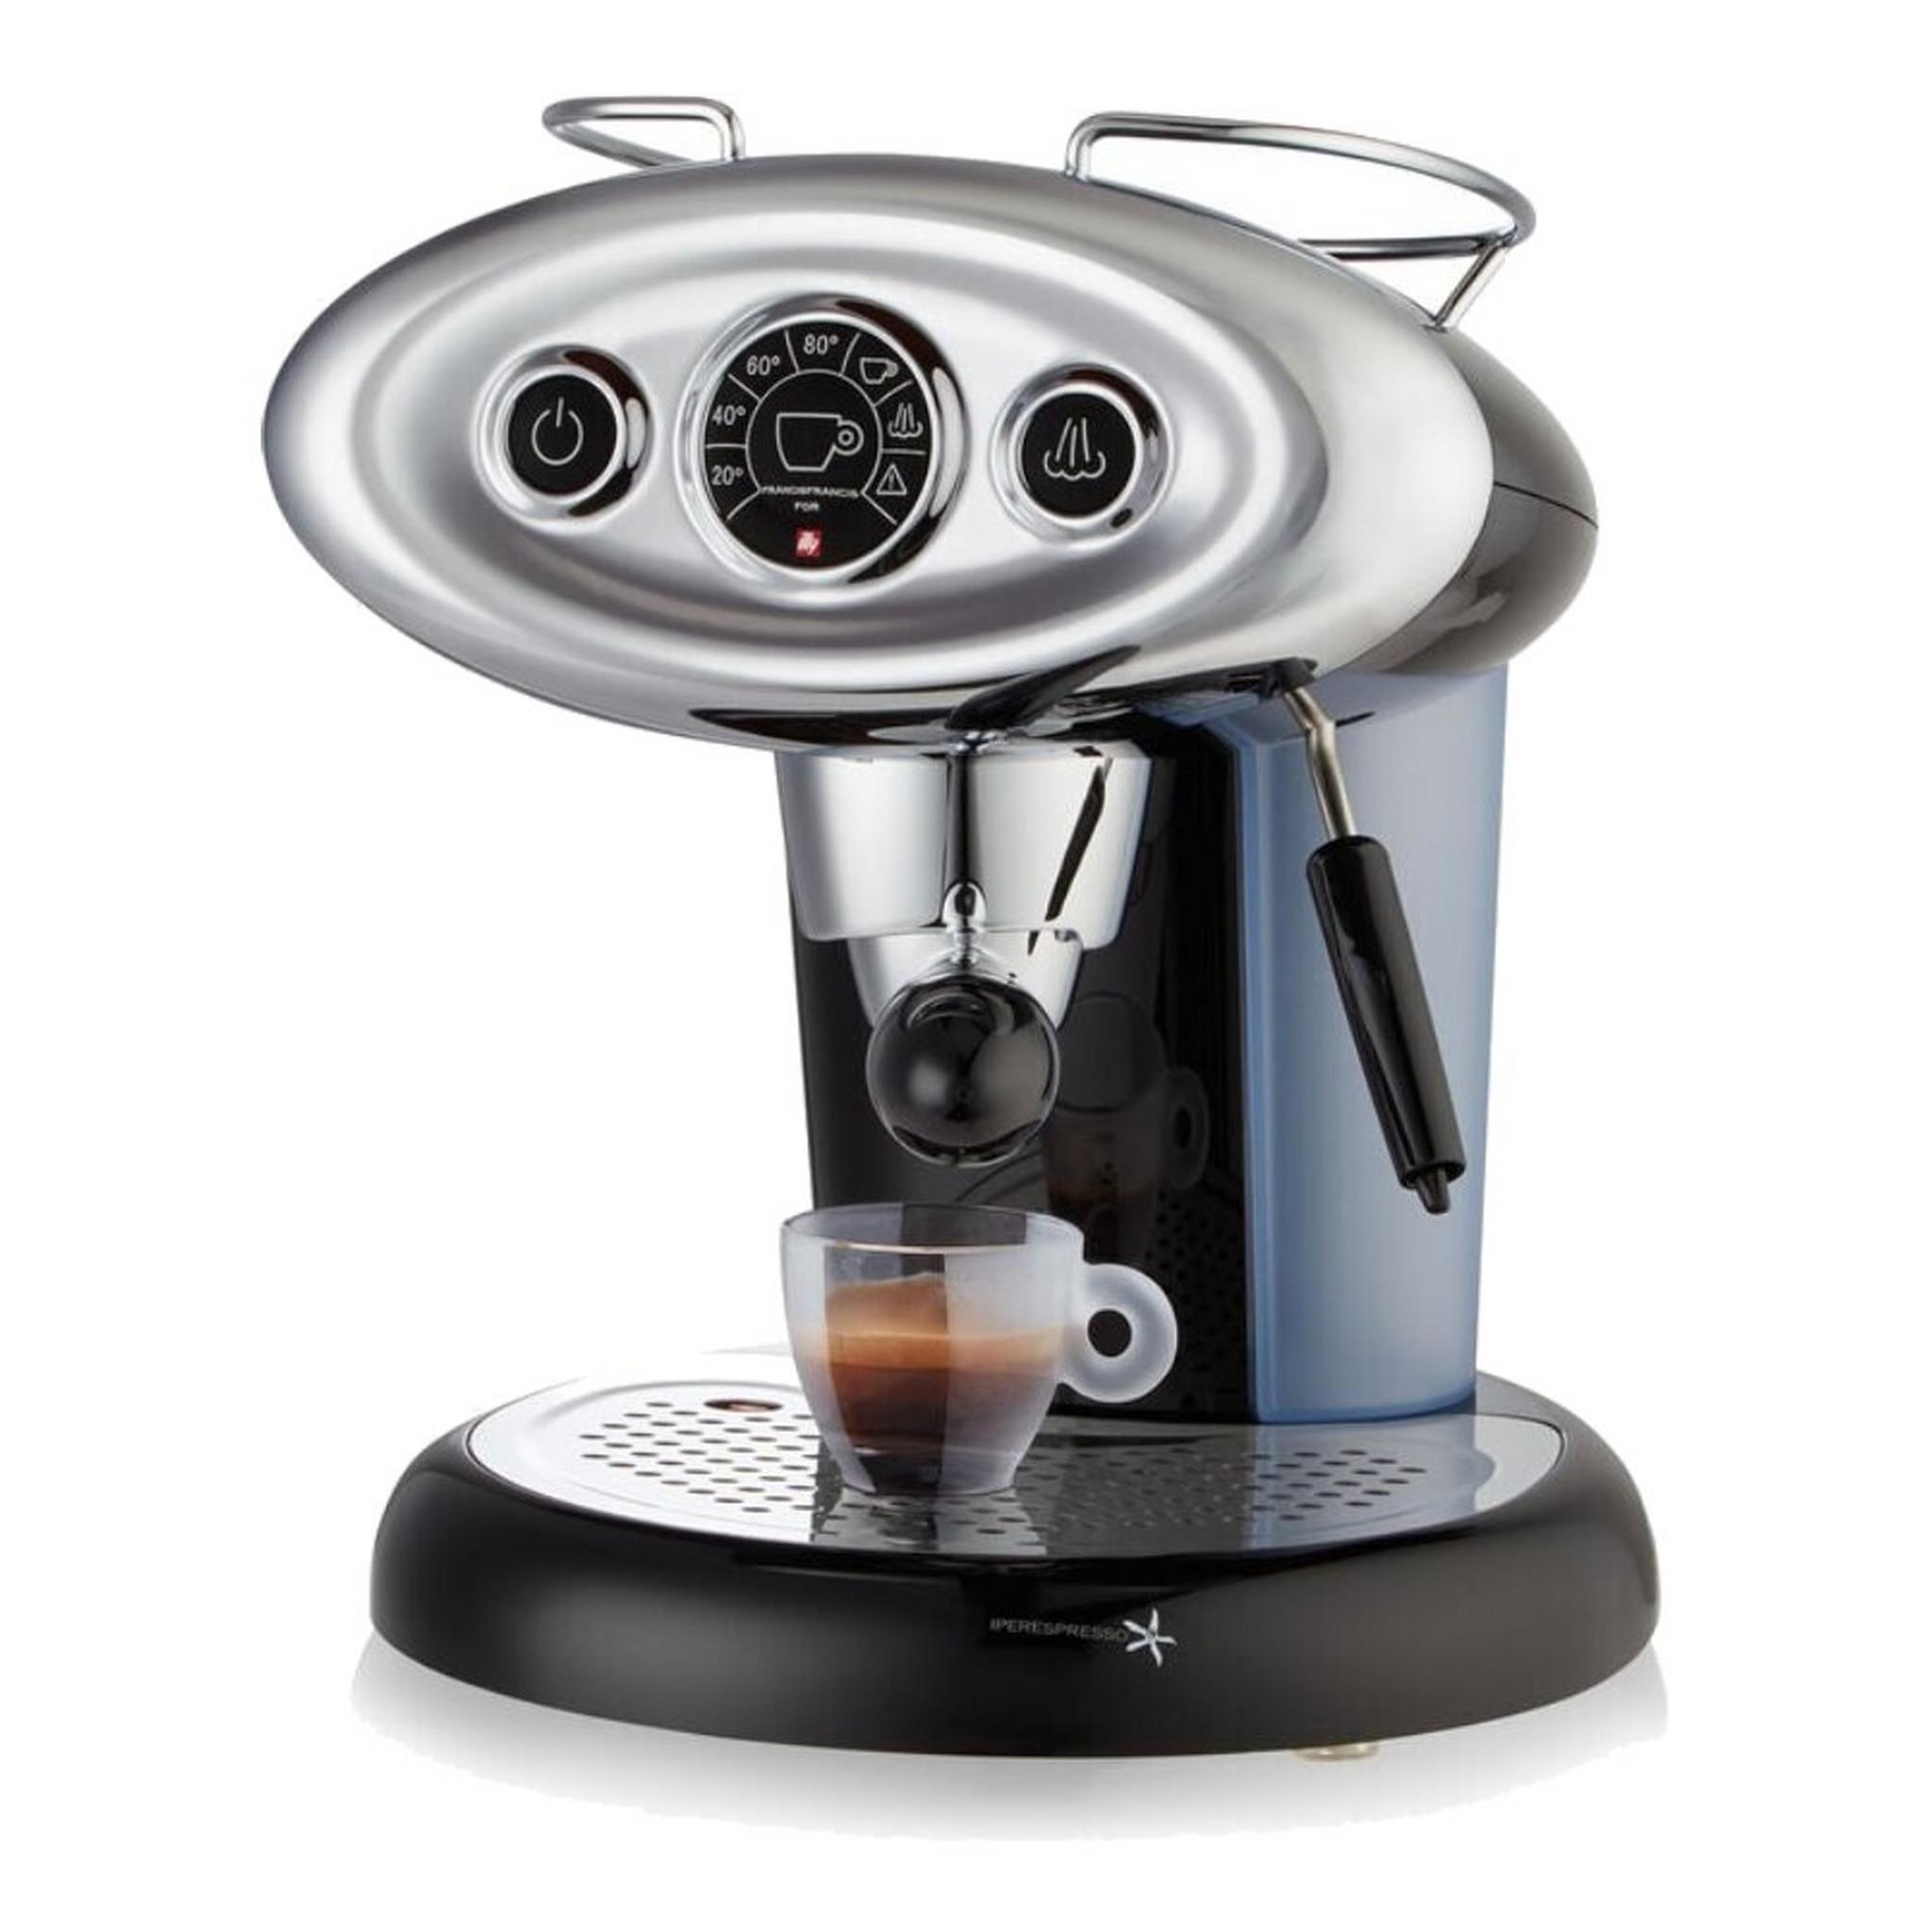 Illy Coffee Machine (X7.1) - Black